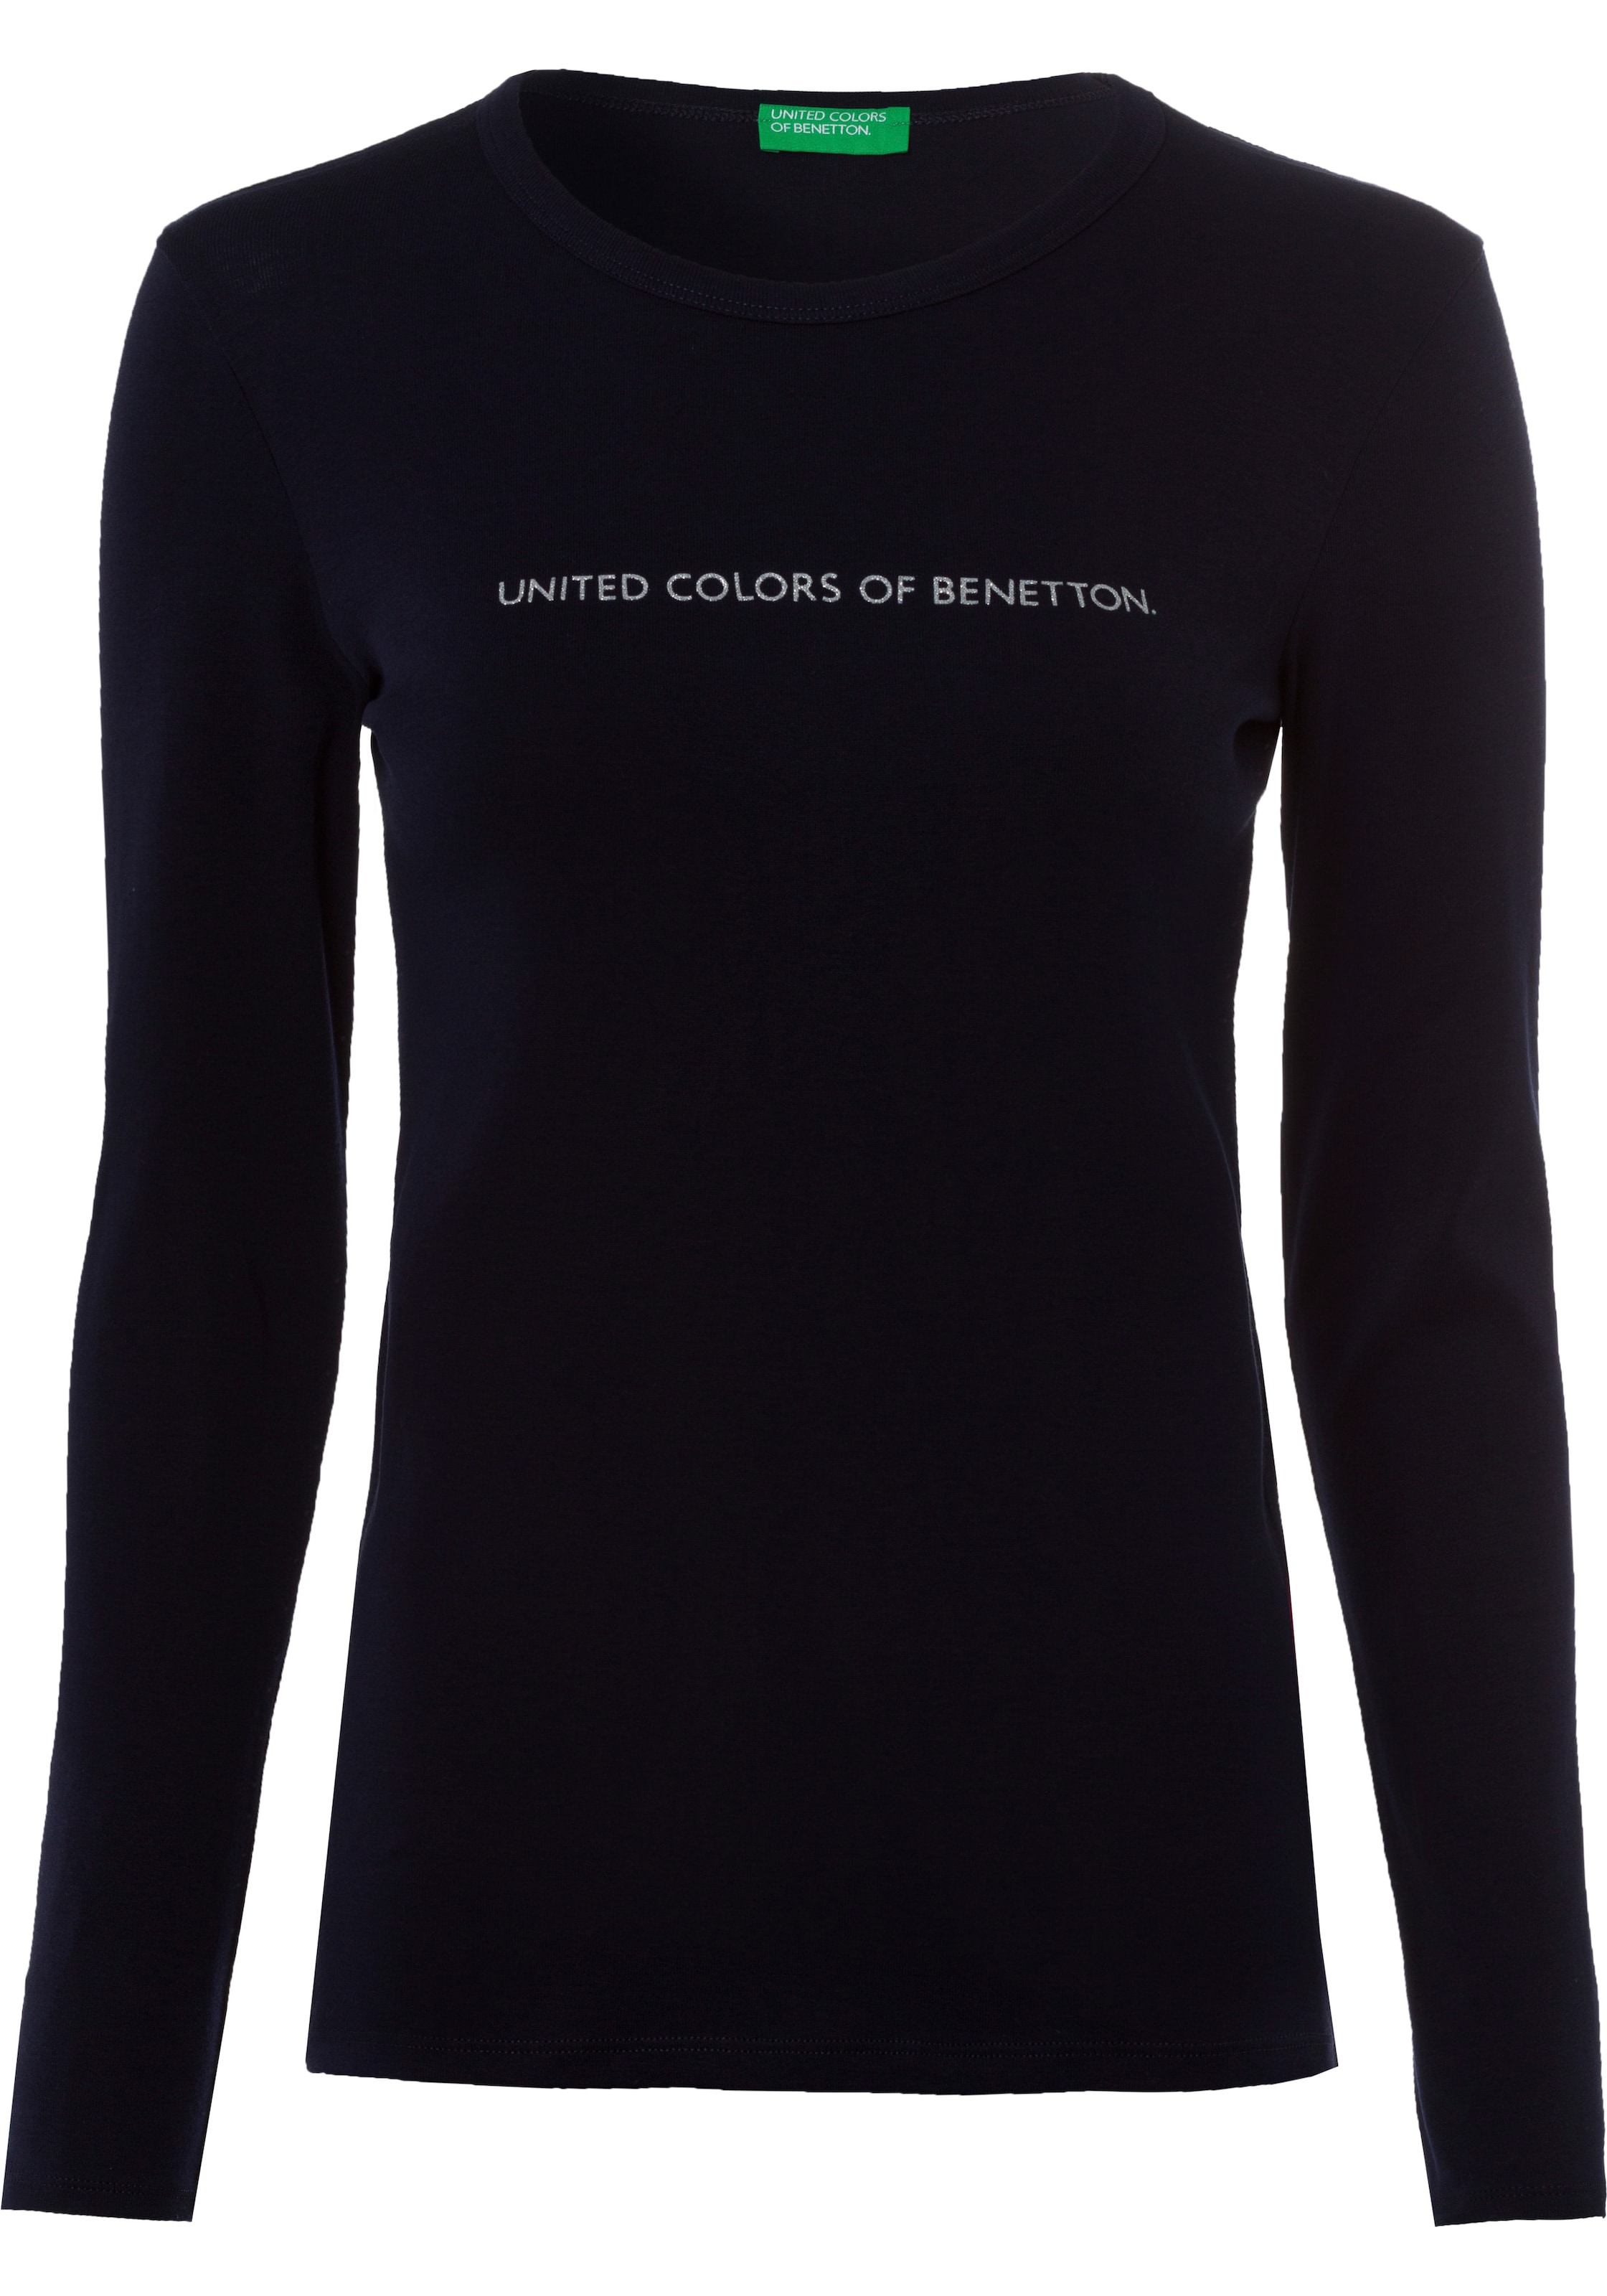 ♕ Labelprint kaufen Glitzereffekt Langarmshirt, Benetton versandkostenfrei of United Colors mit